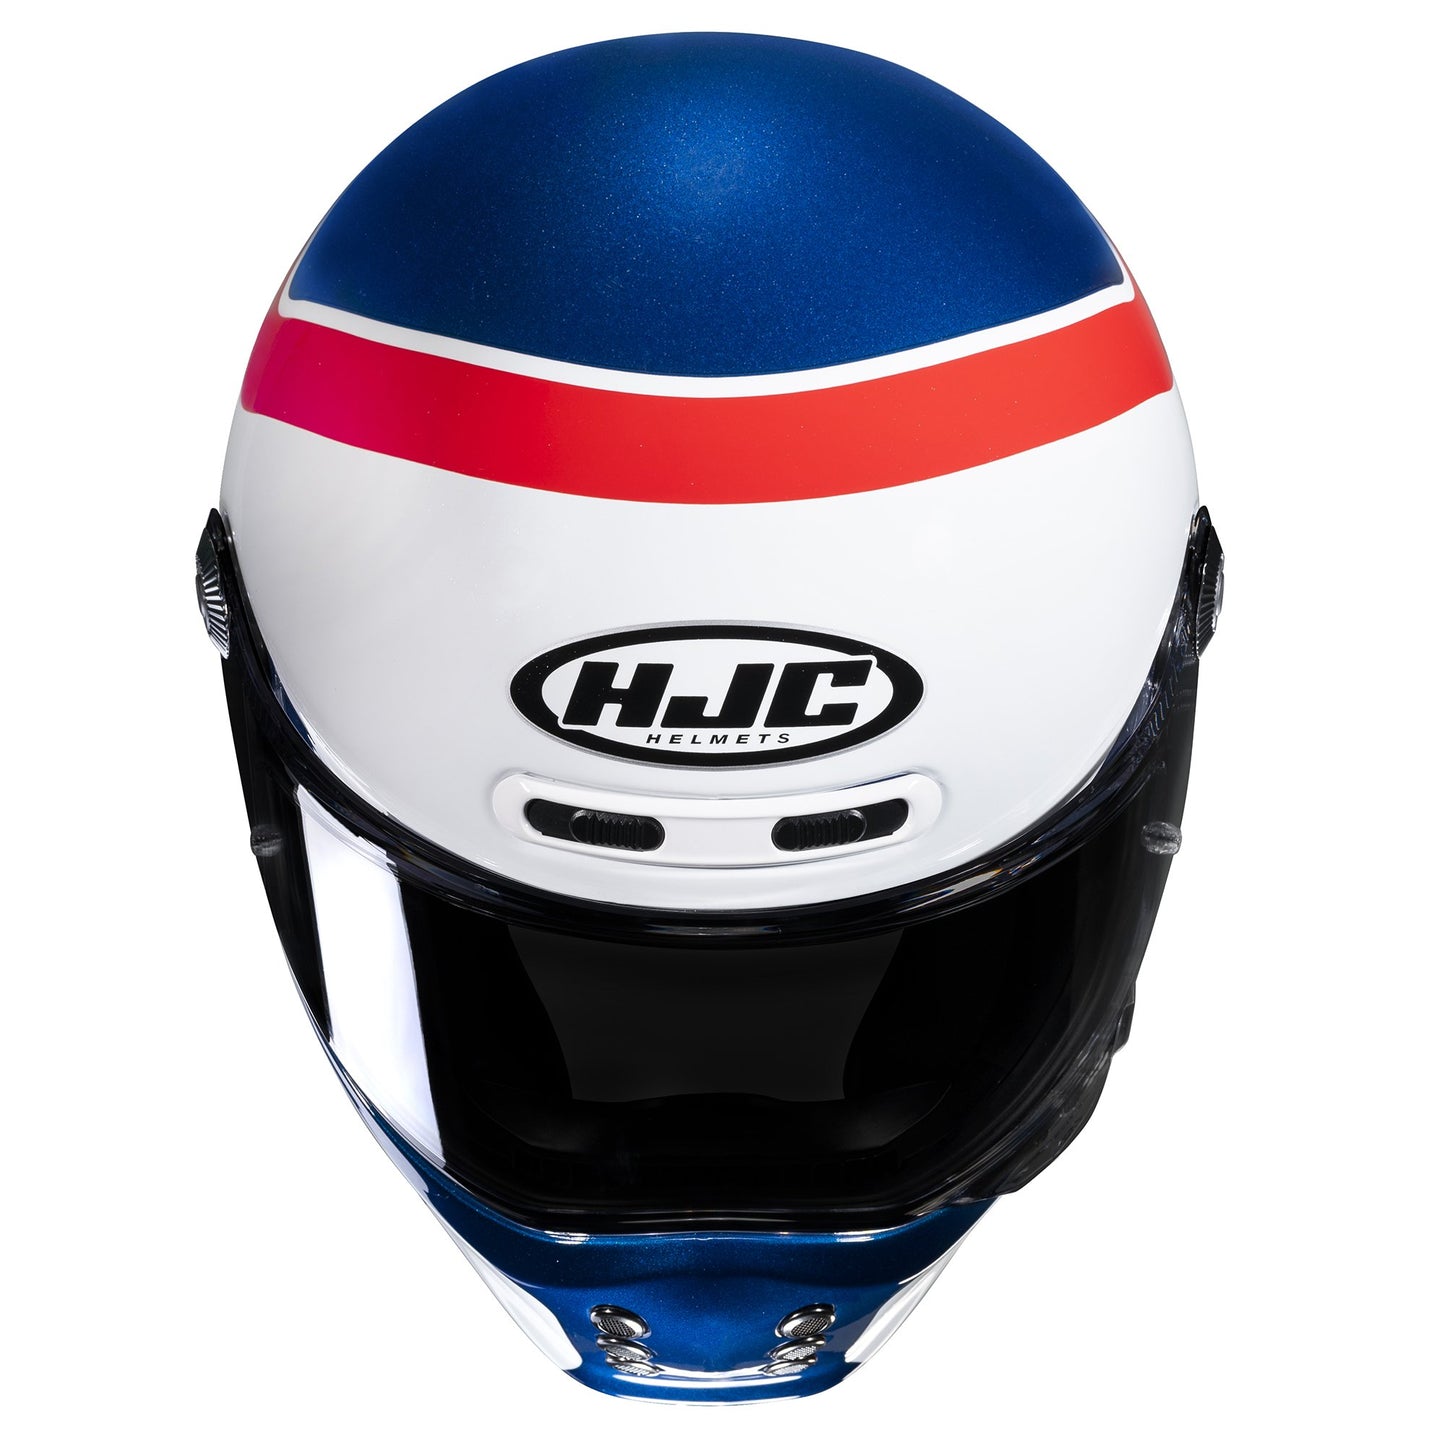 HJC V10 Grape Motorcycle Full Face Helmet - White/Red/Blue